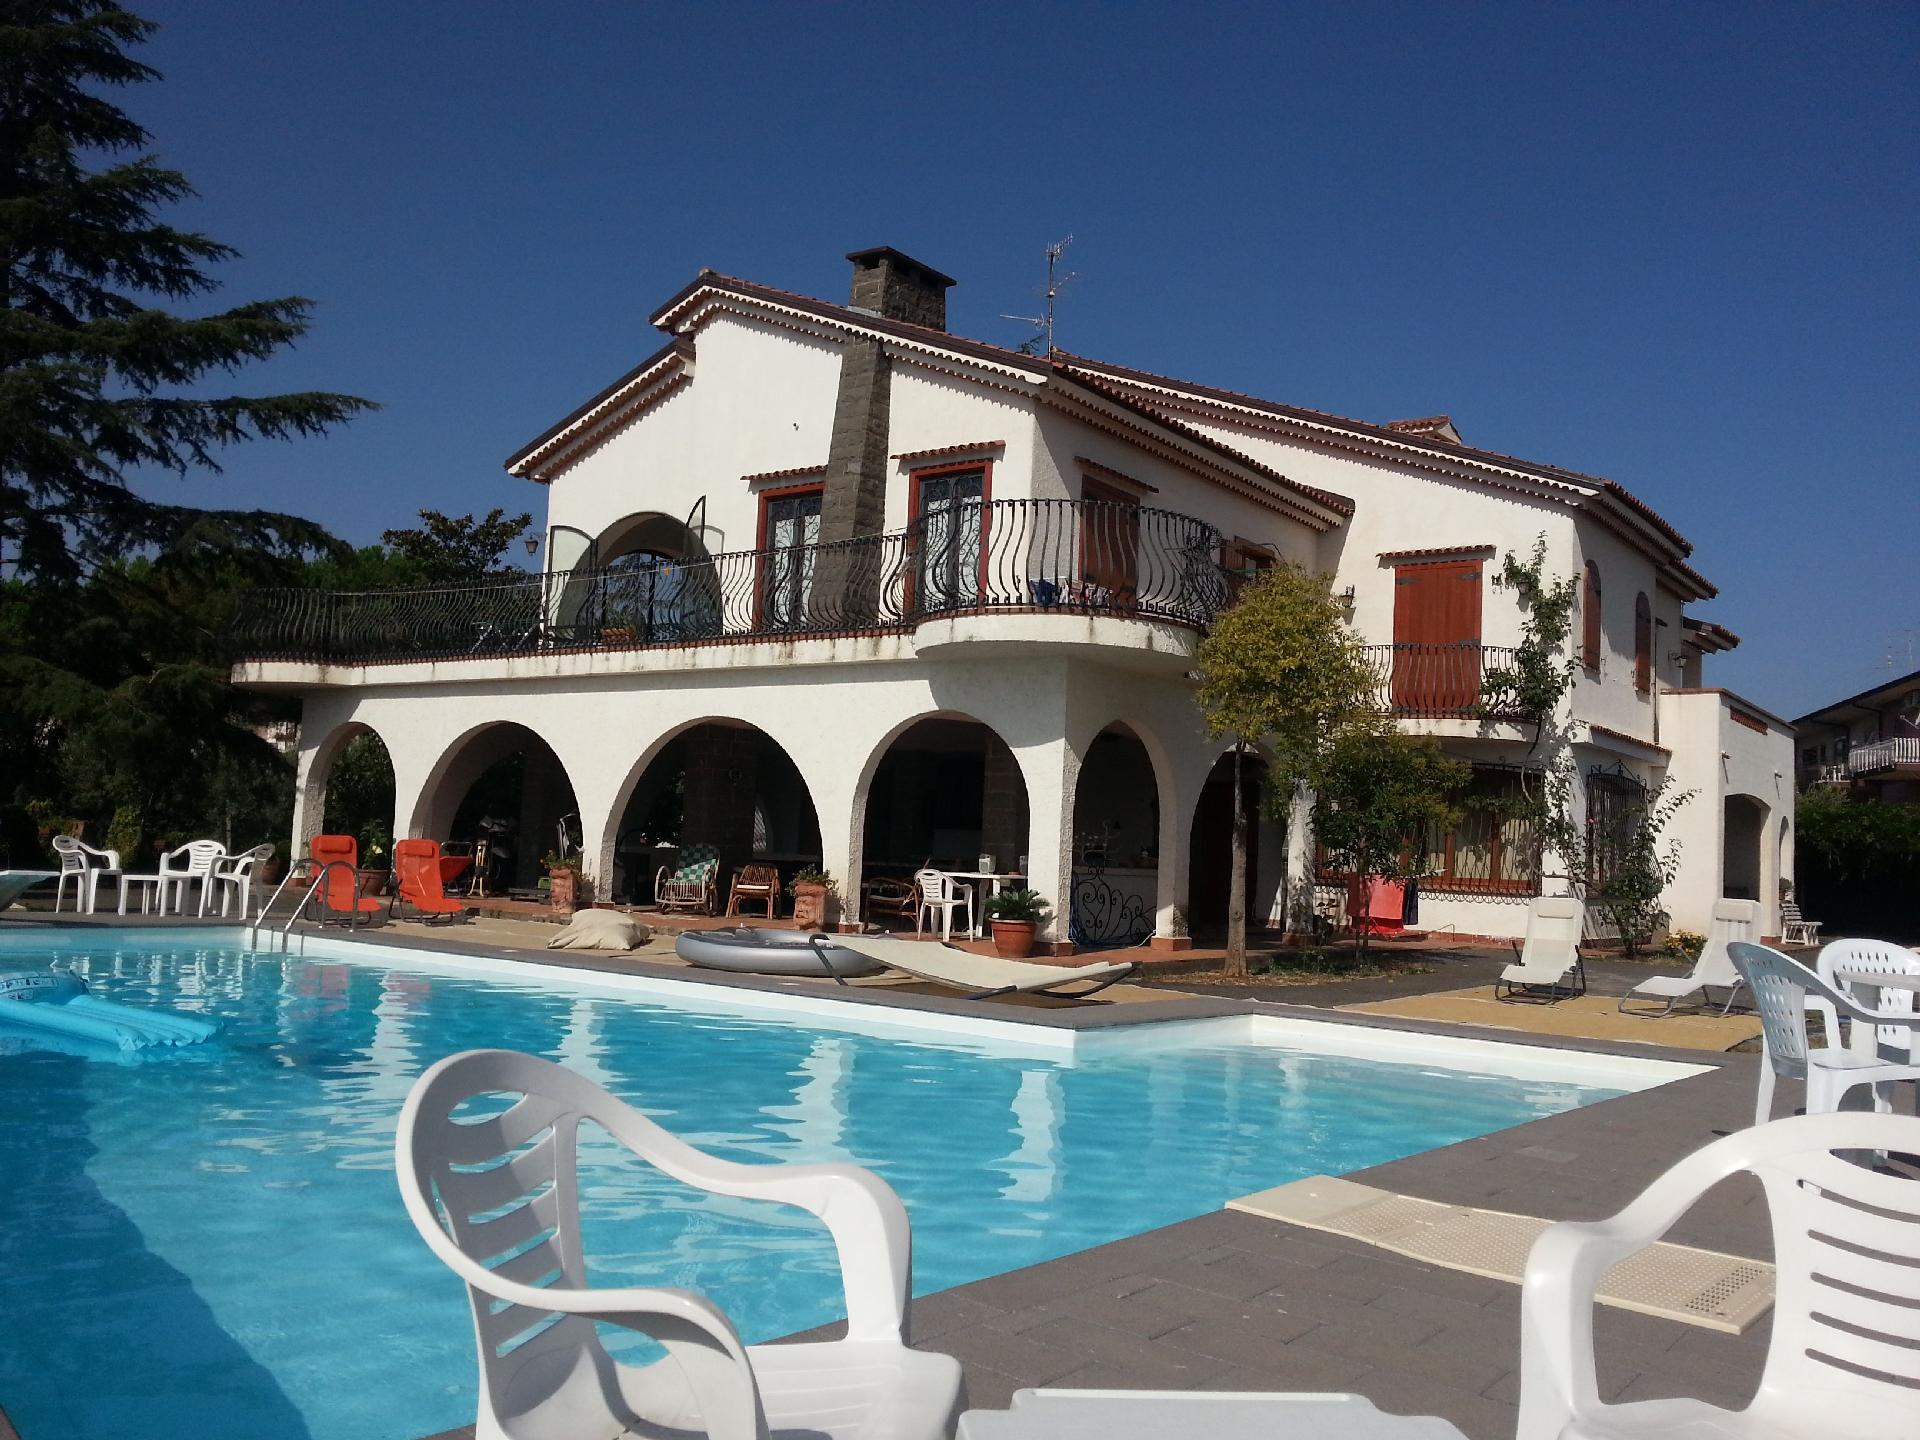 Ferienhaus mit Privatpool für 4 Personen  + 2 Ferienhaus in Italien